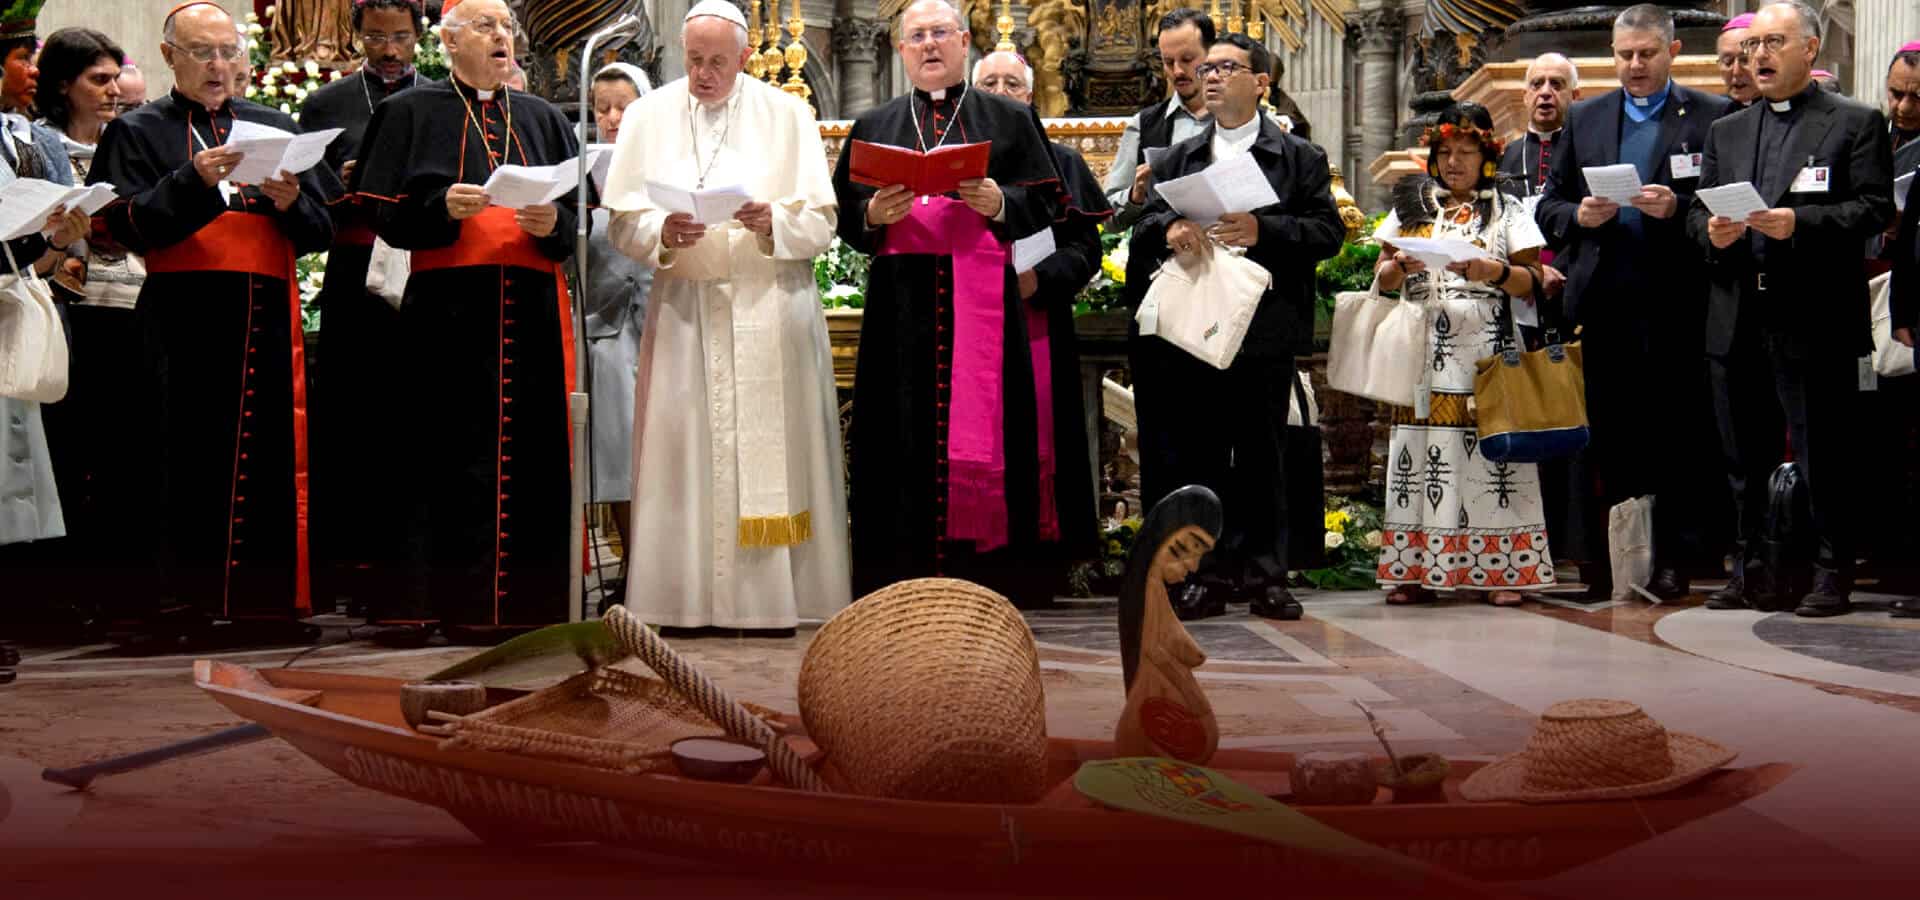 Cento studiosi cattolici condannano Papa Francesco per “atti sacrileghi” - Il Primato Nazionale